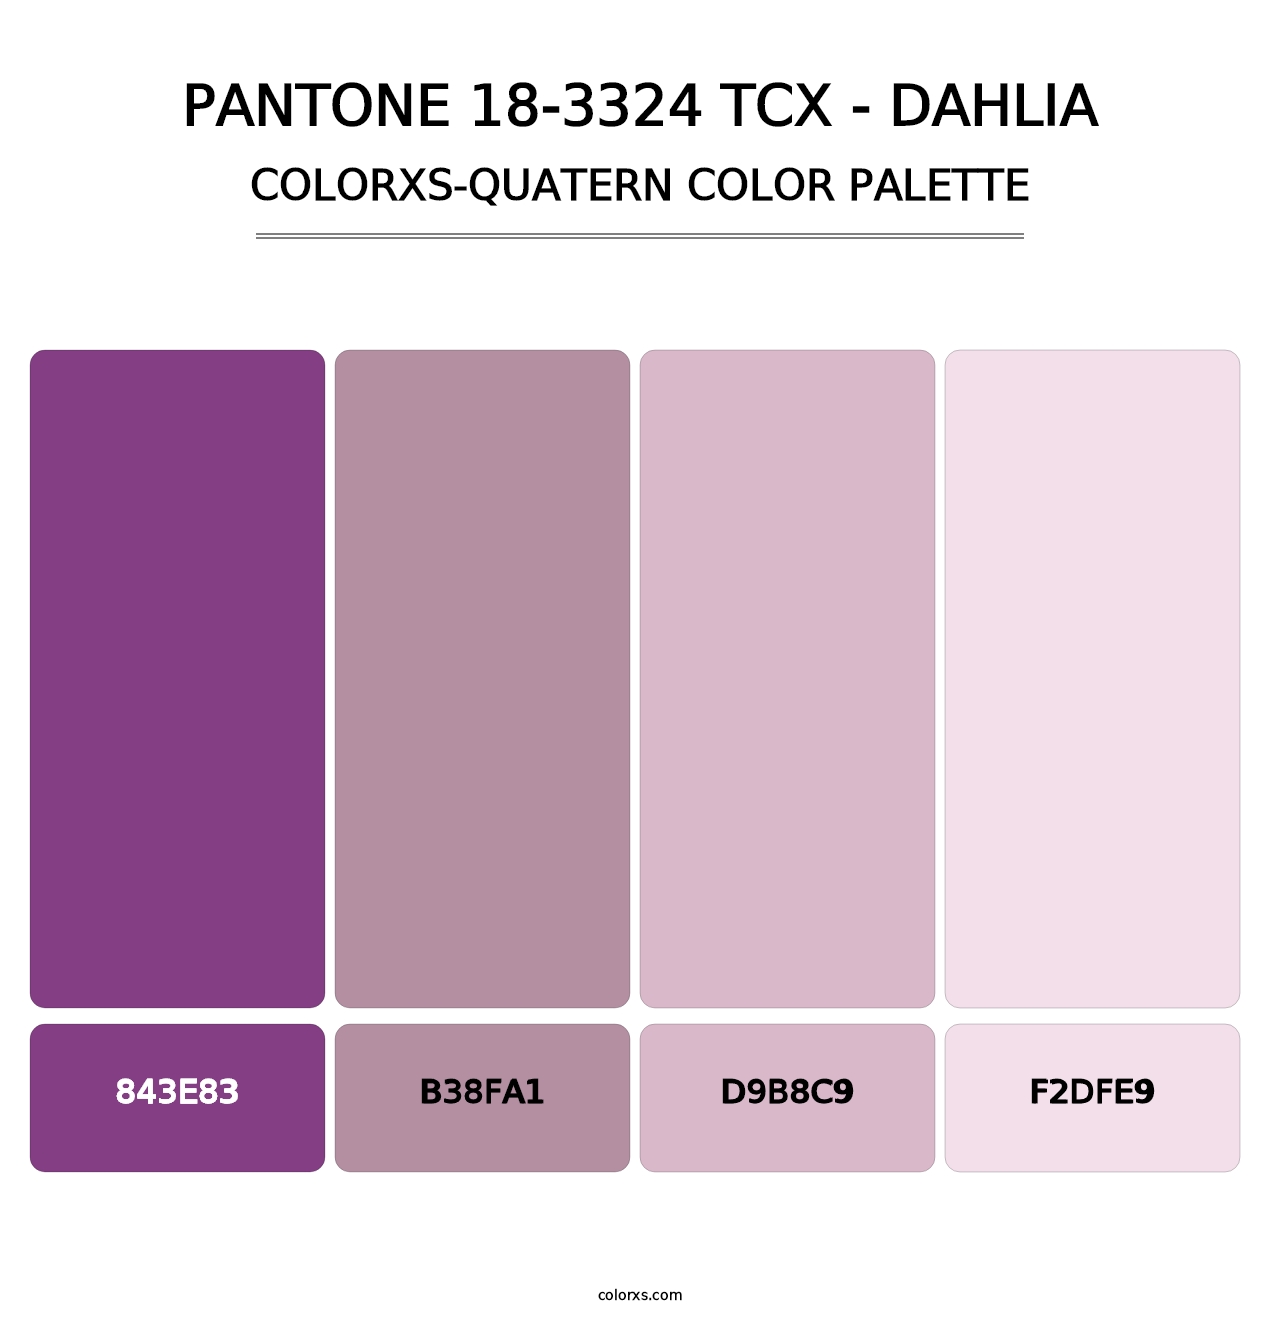 PANTONE 18-3324 TCX - Dahlia - Colorxs Quatern Palette